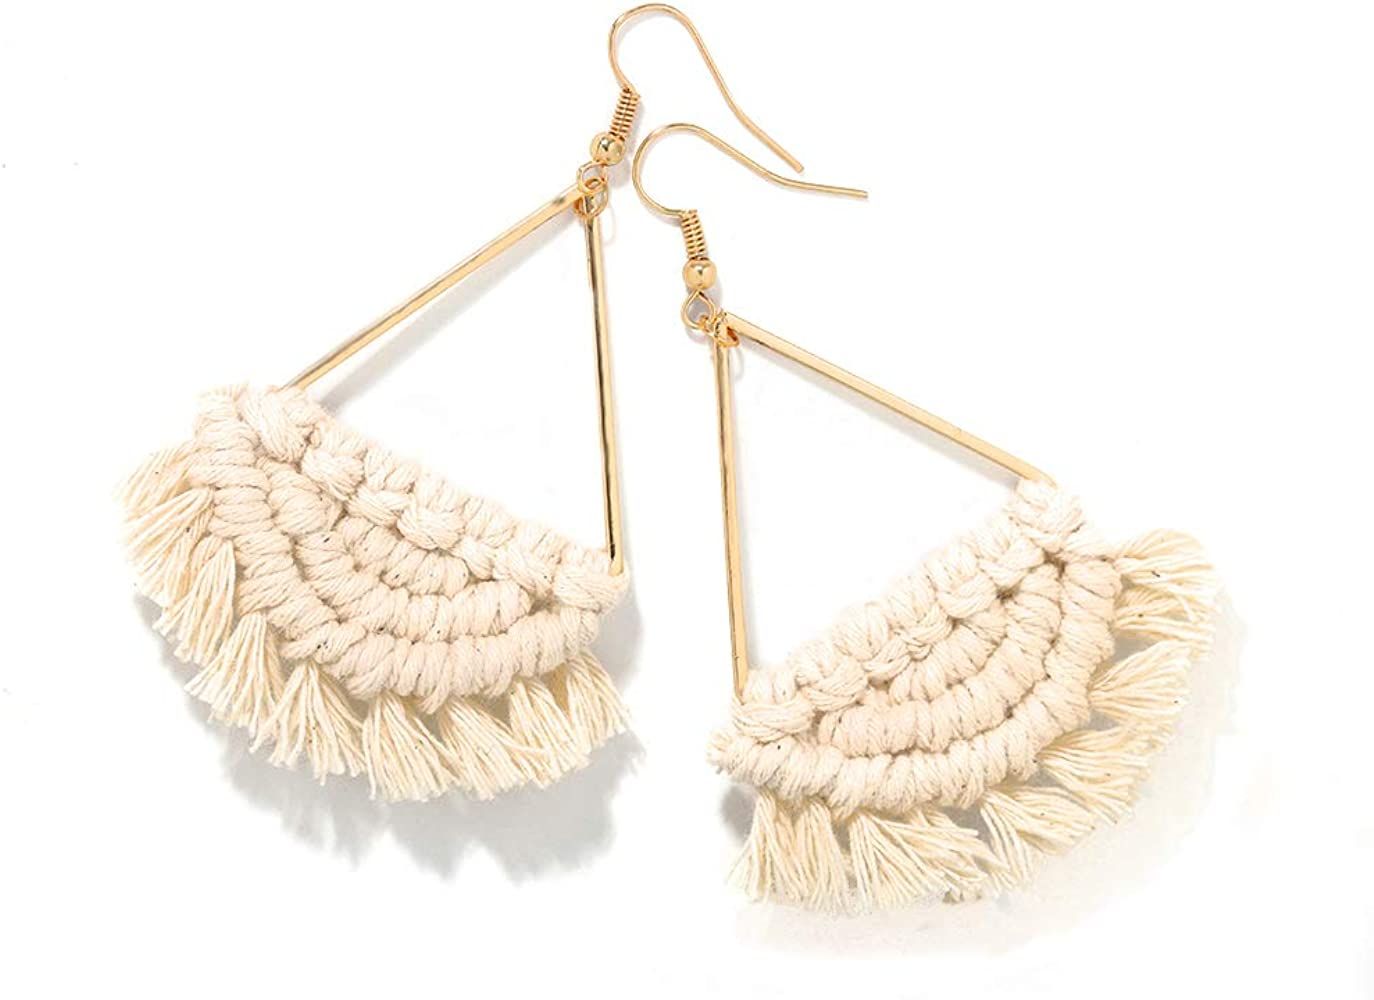 Bohemian Handmade Fringe Tassel Dangle Drop Statement Earrings for Women | Amazon (US)